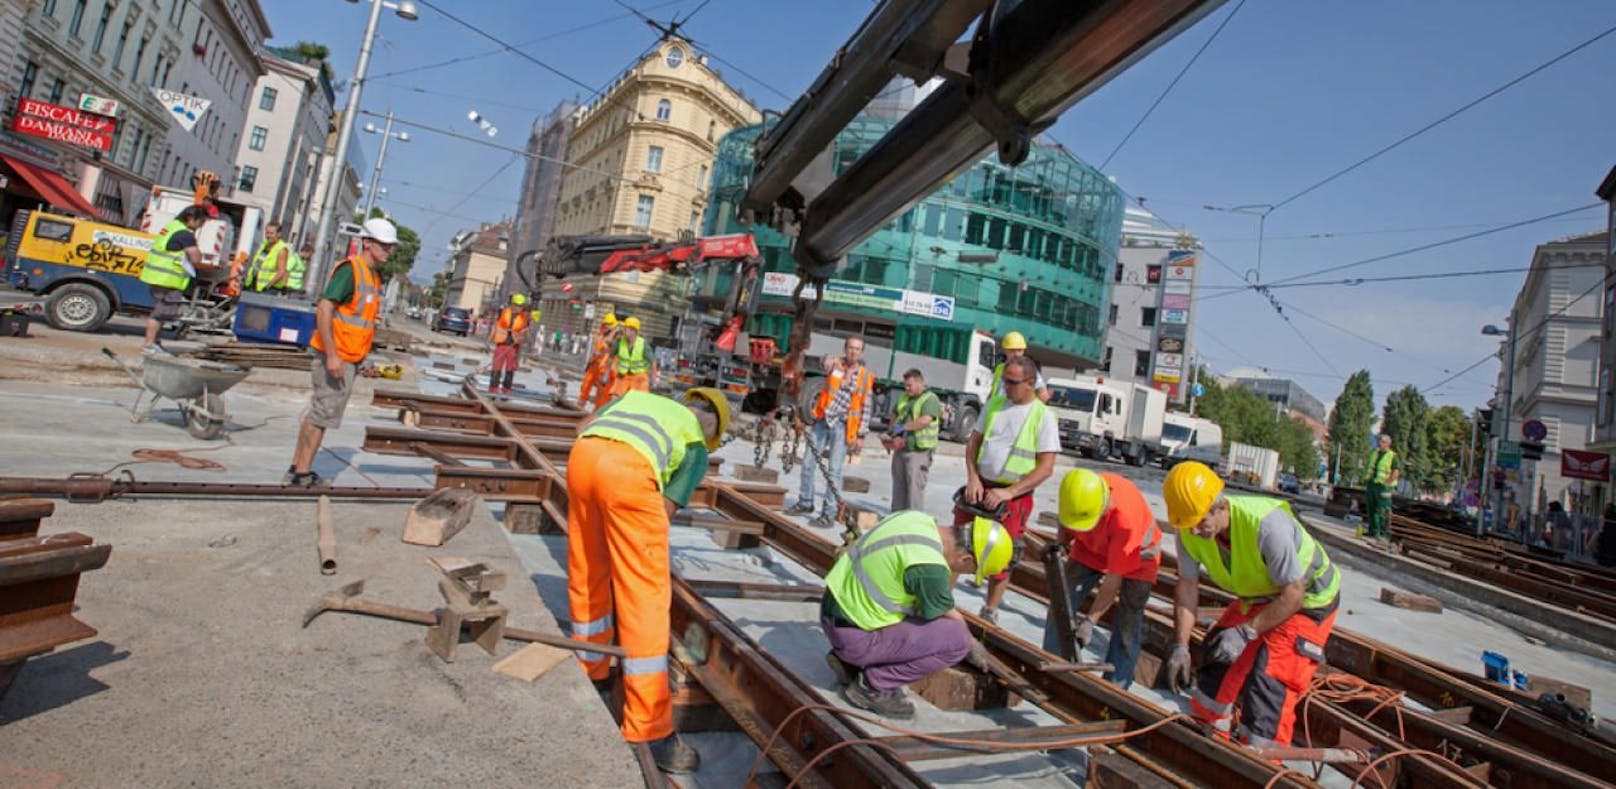 40 Gleisbaustellen sind heuer in Wien geplant